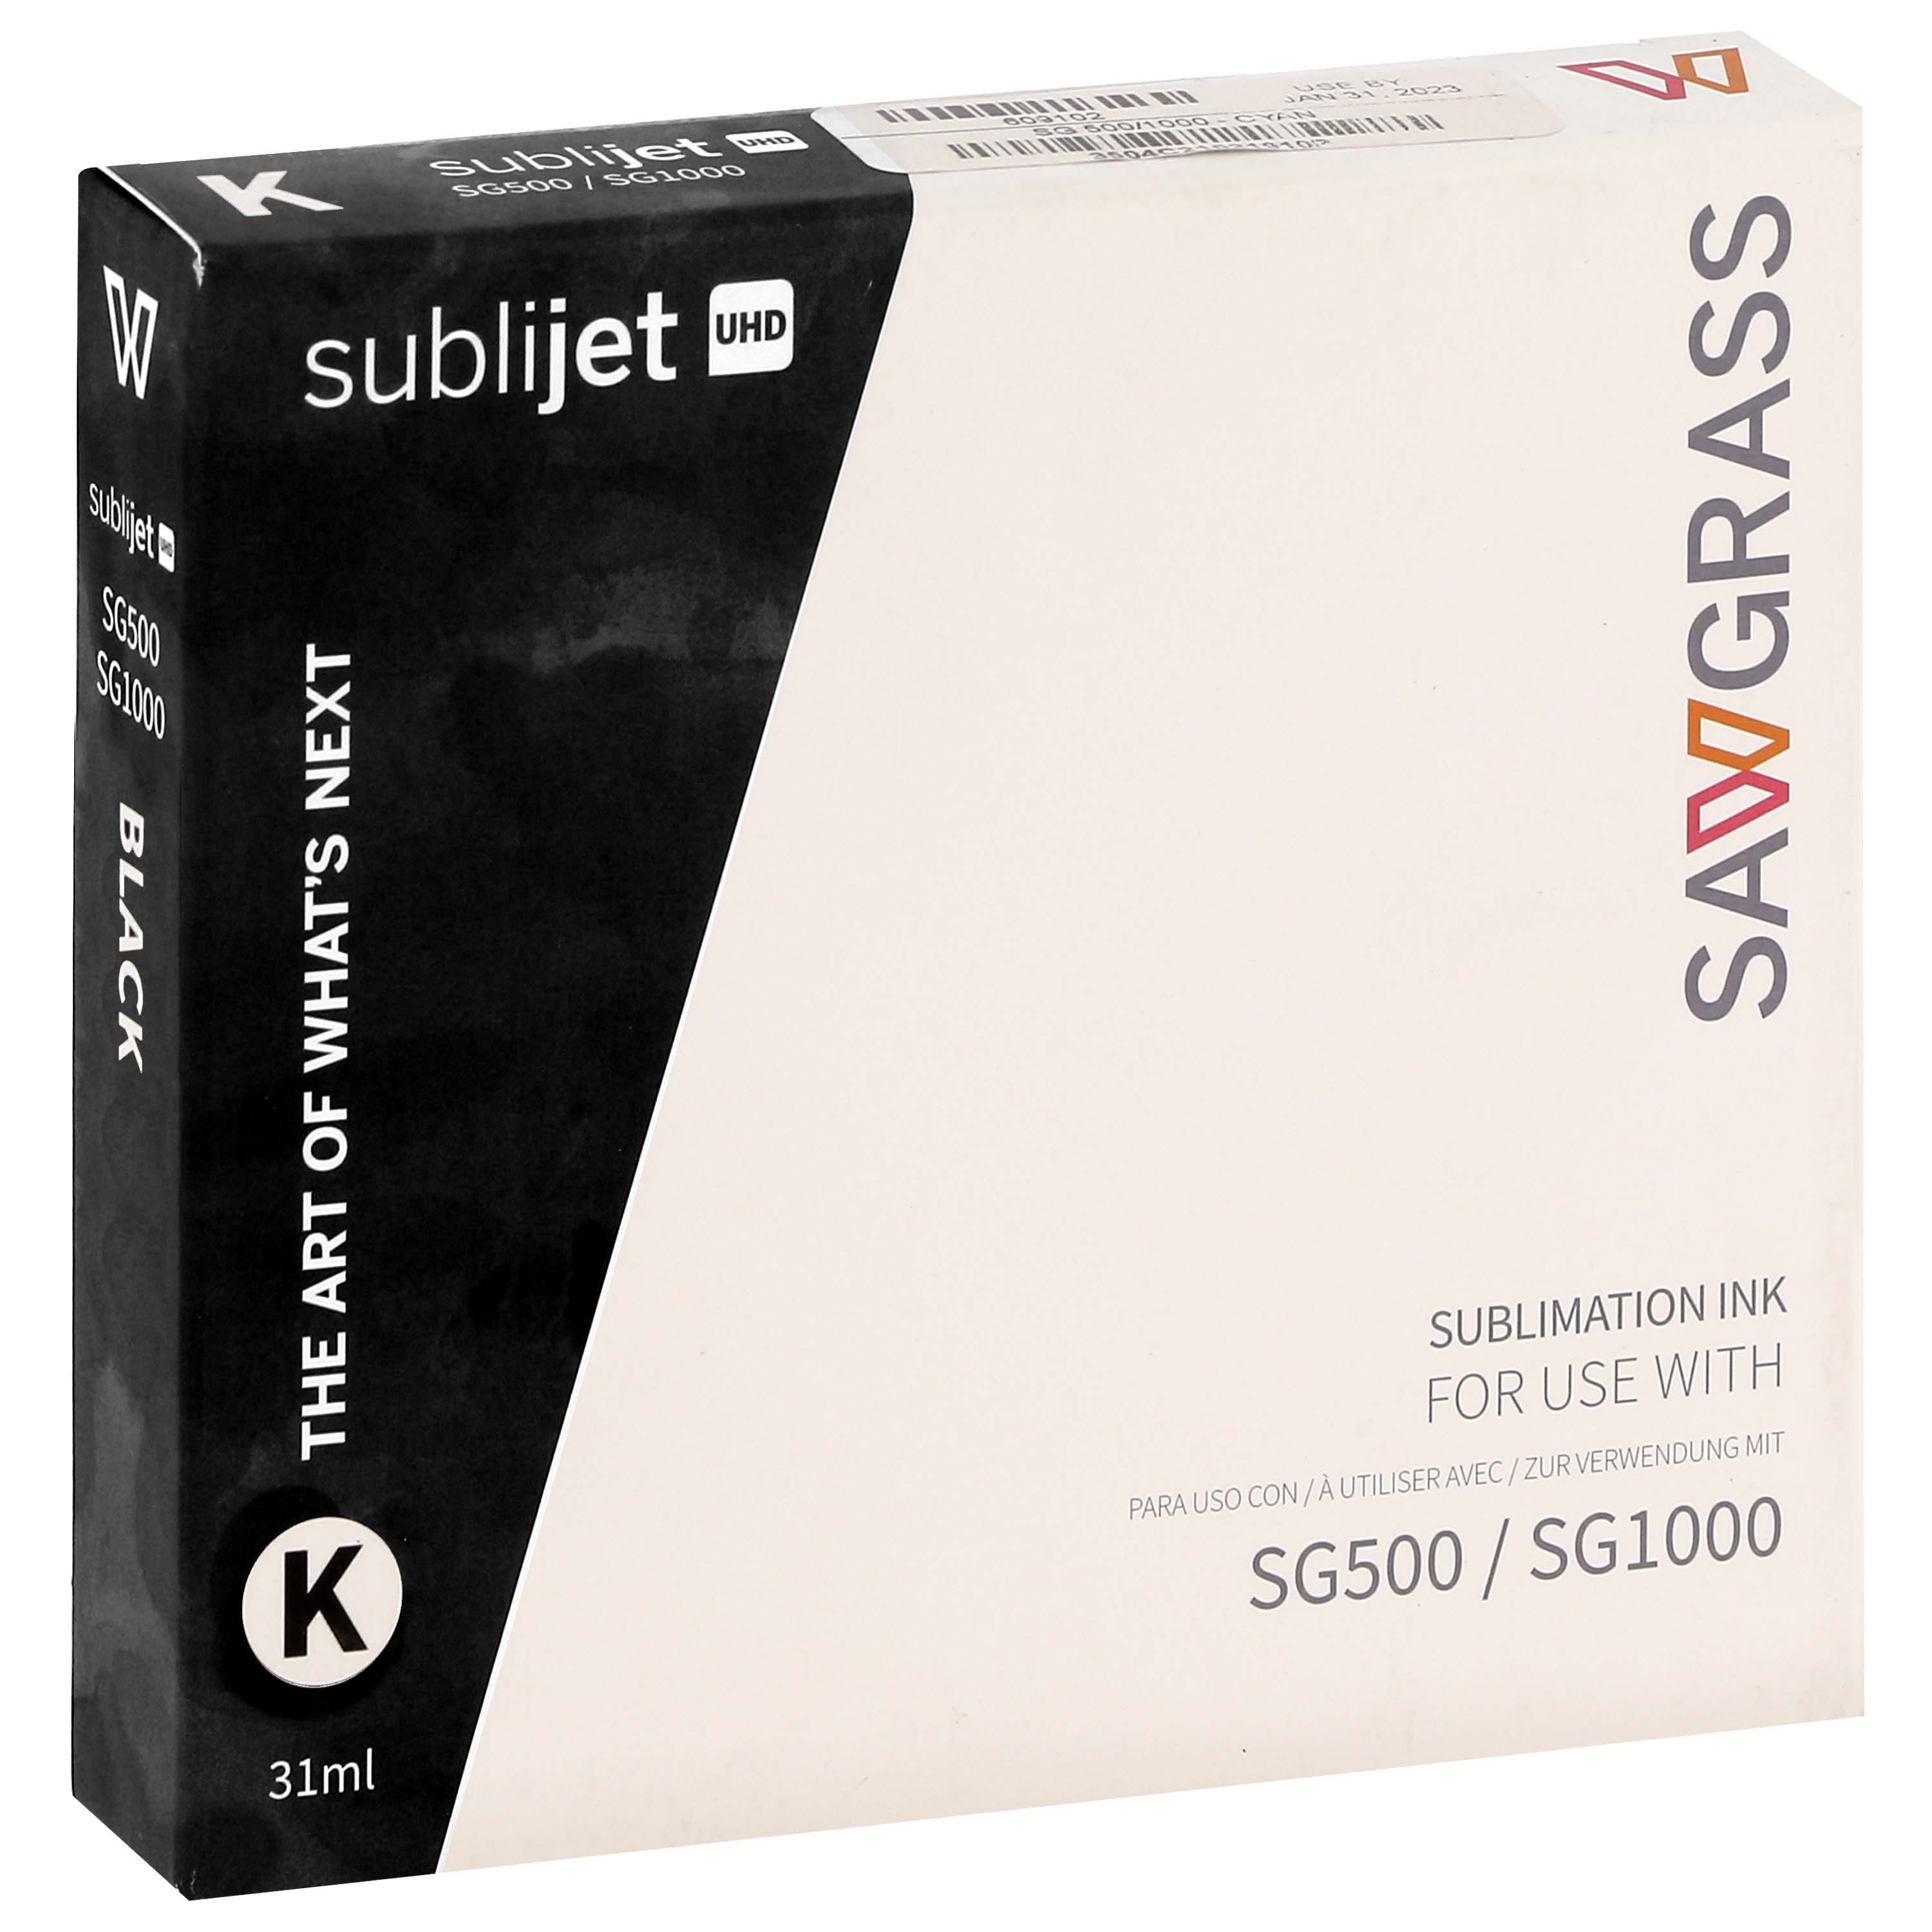 SAWGRASS - Encre sublimation SubliJet-UHD - Noire 31ml - pour Sawgrass SG500 et SG1000